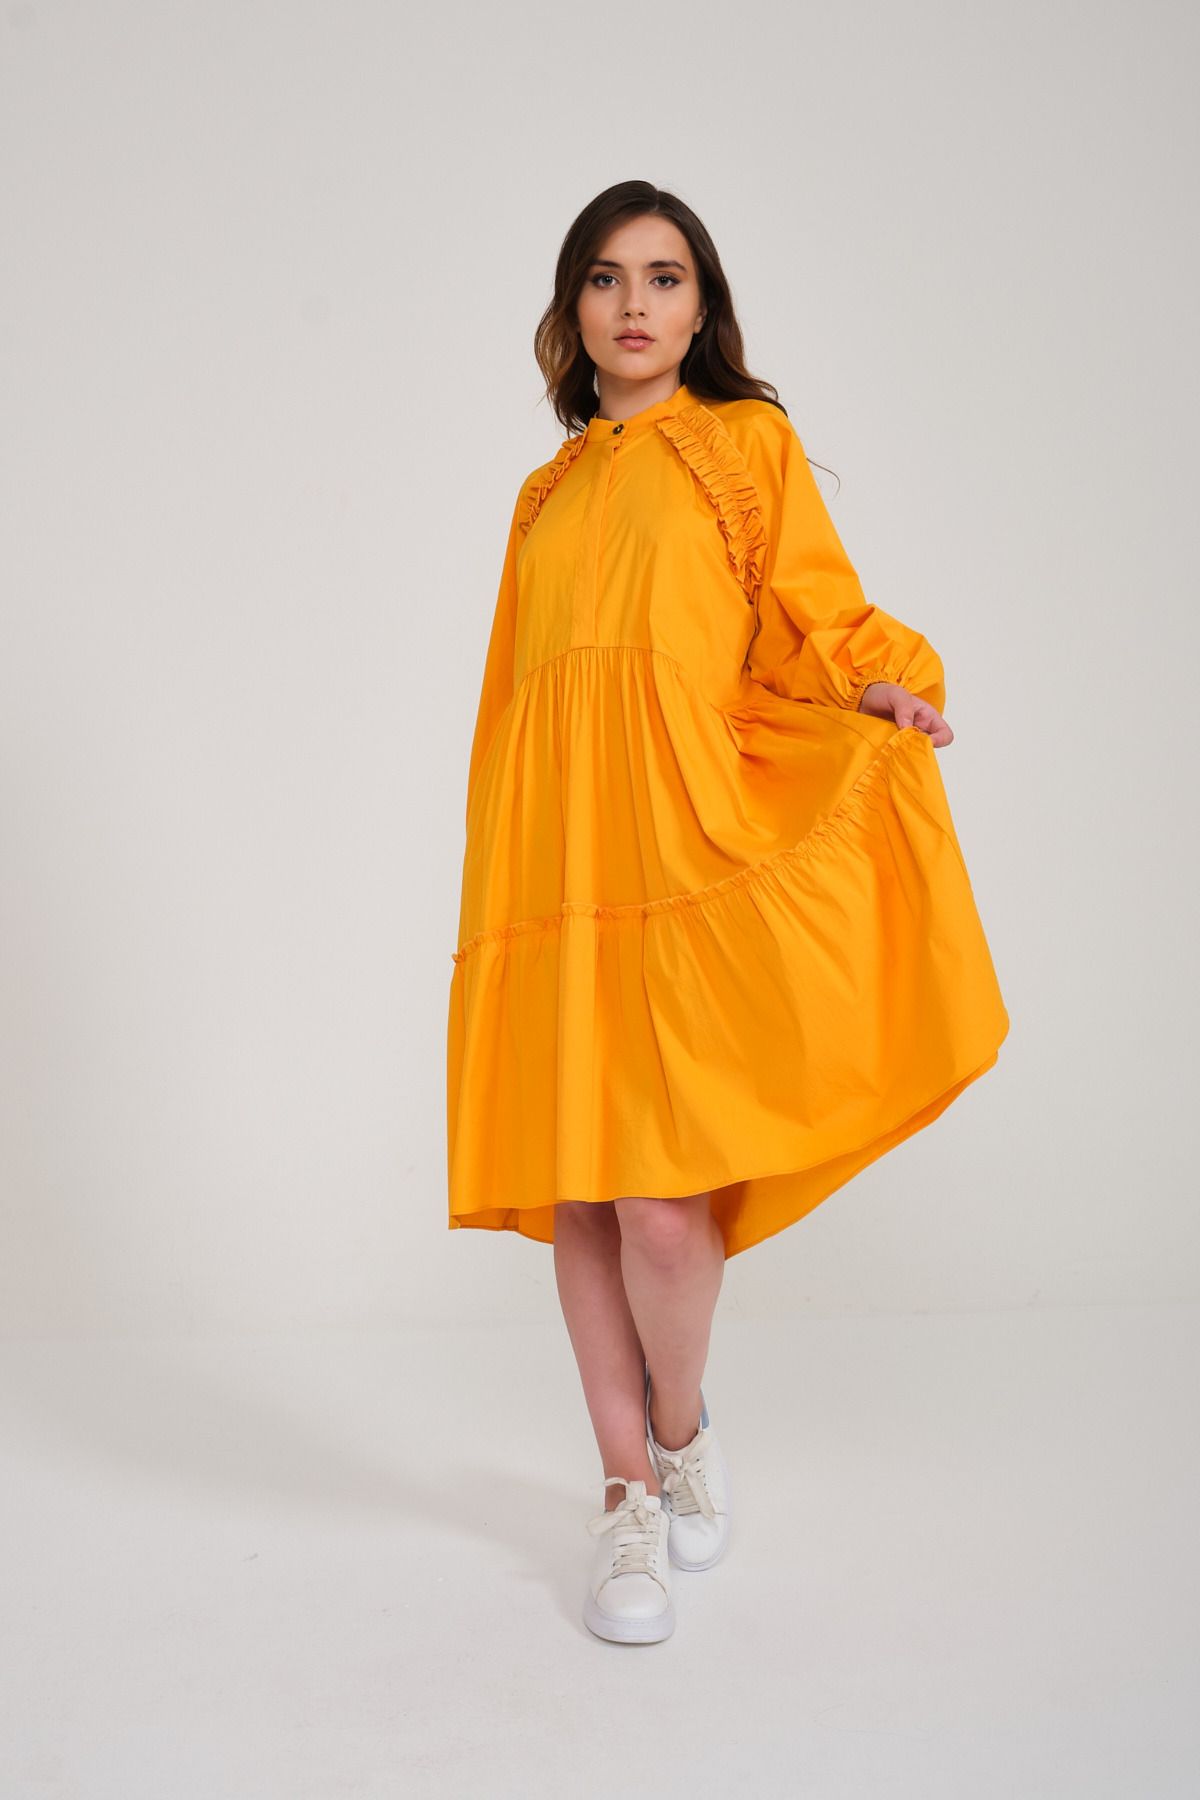 Mimya Turuncu Fırfırlı Rahat Kısa Pamuklu Elbise 3300